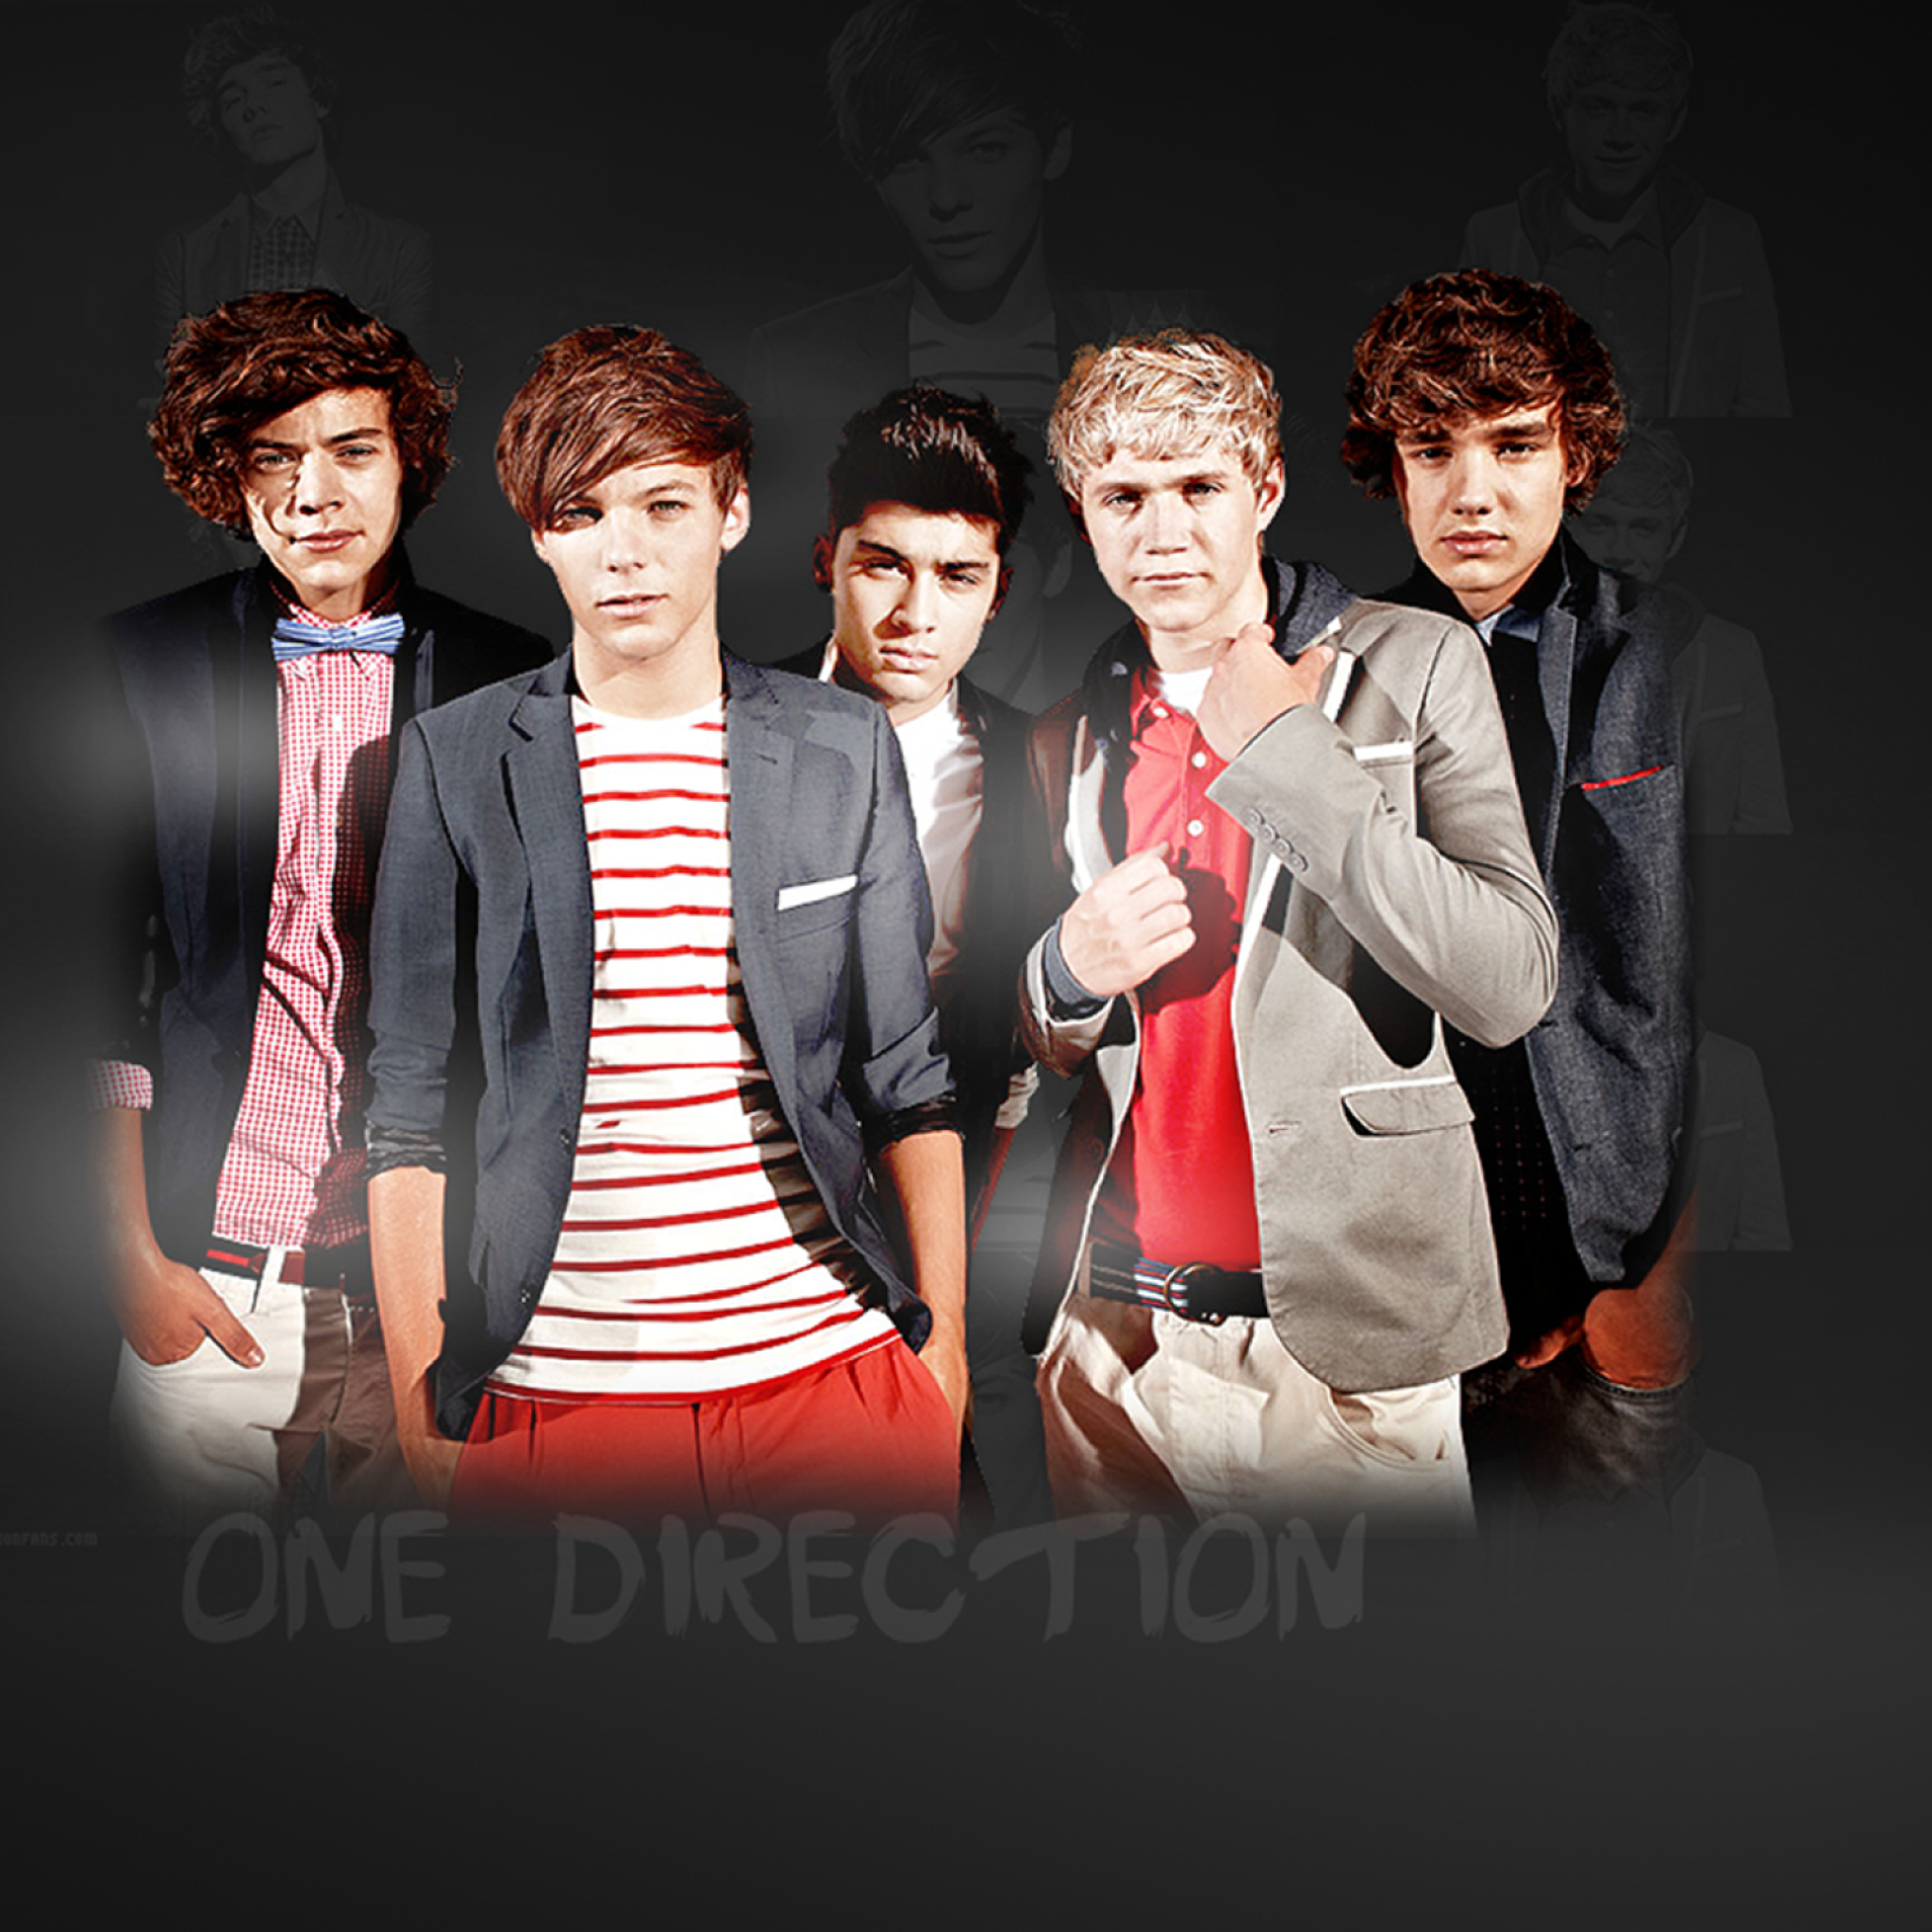 Sfondi One-Direction-Wallpaper-8 2048x2048